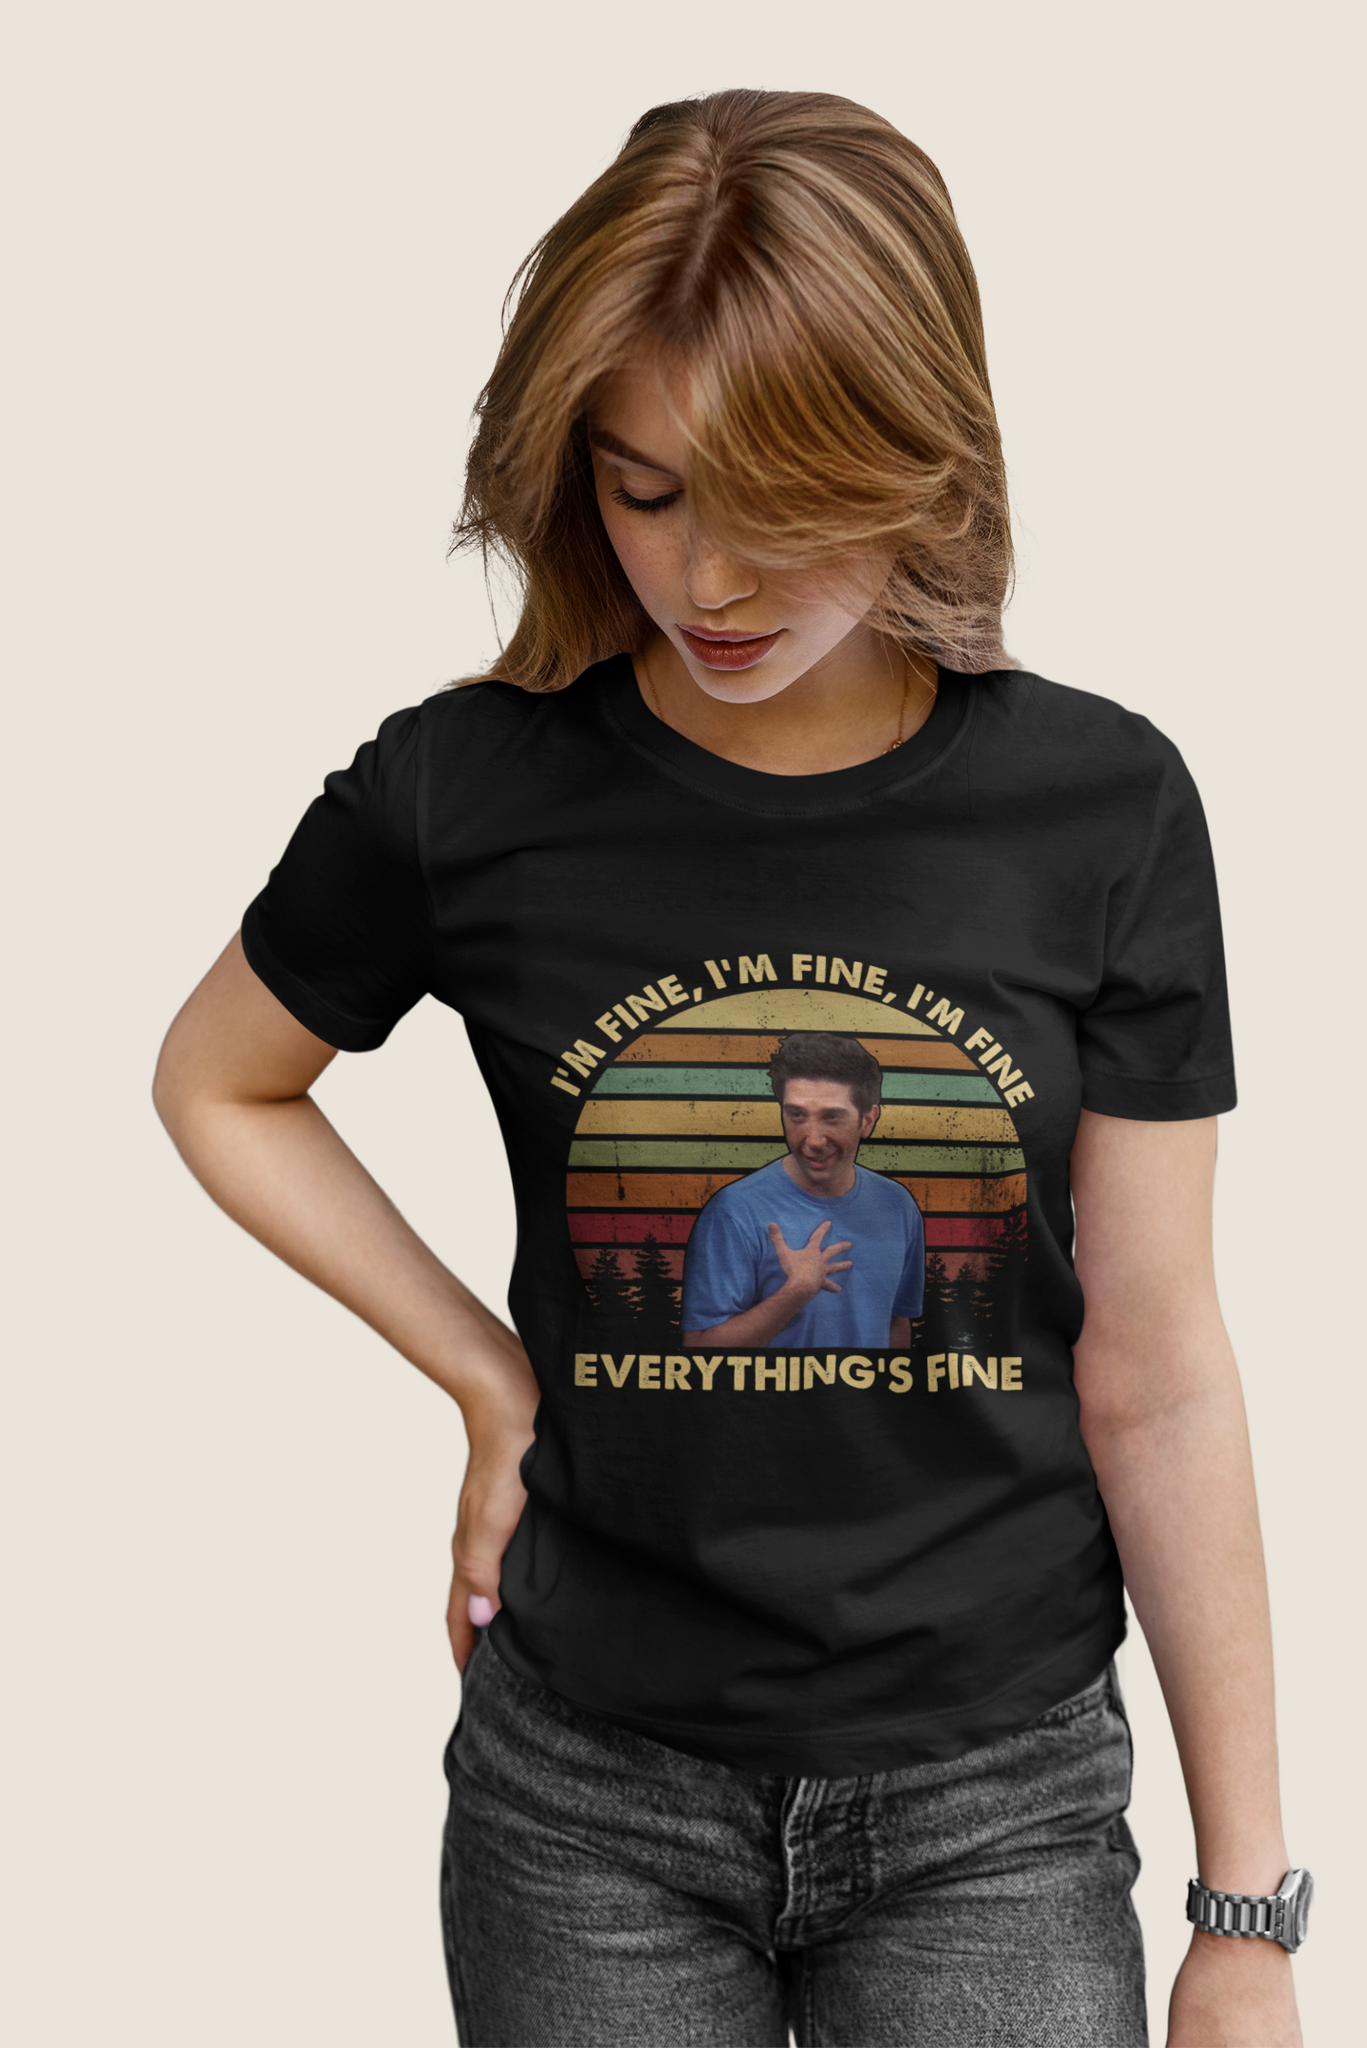 Friends TV Show Vintage T Shirt, Friends Shirt, Ross Geller T Shirt, Im Fine Everythings Fine Tshirt